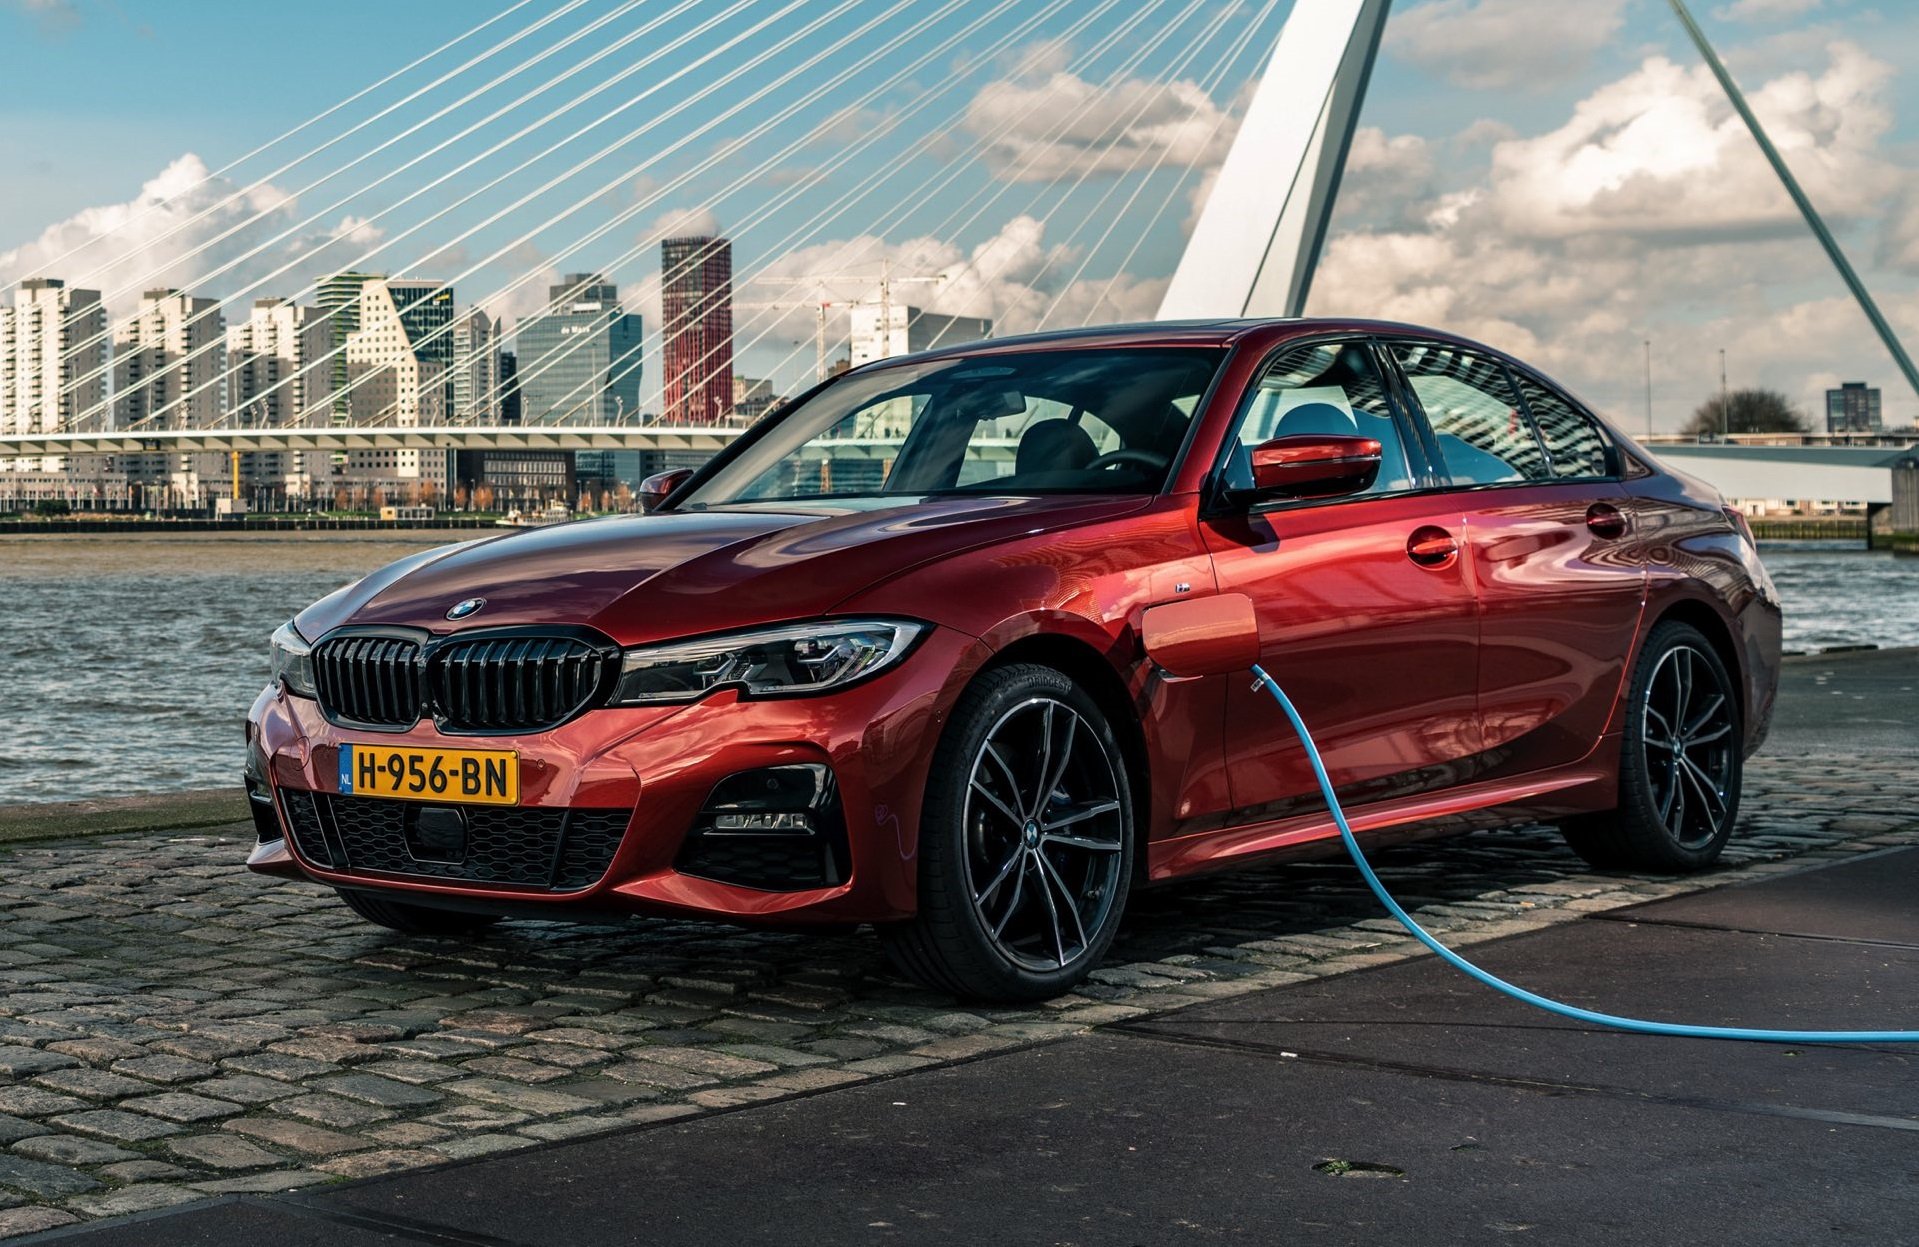 BMW в первой половине 2020 года увеличивает продажи электромобилей и гибридных автомобилей